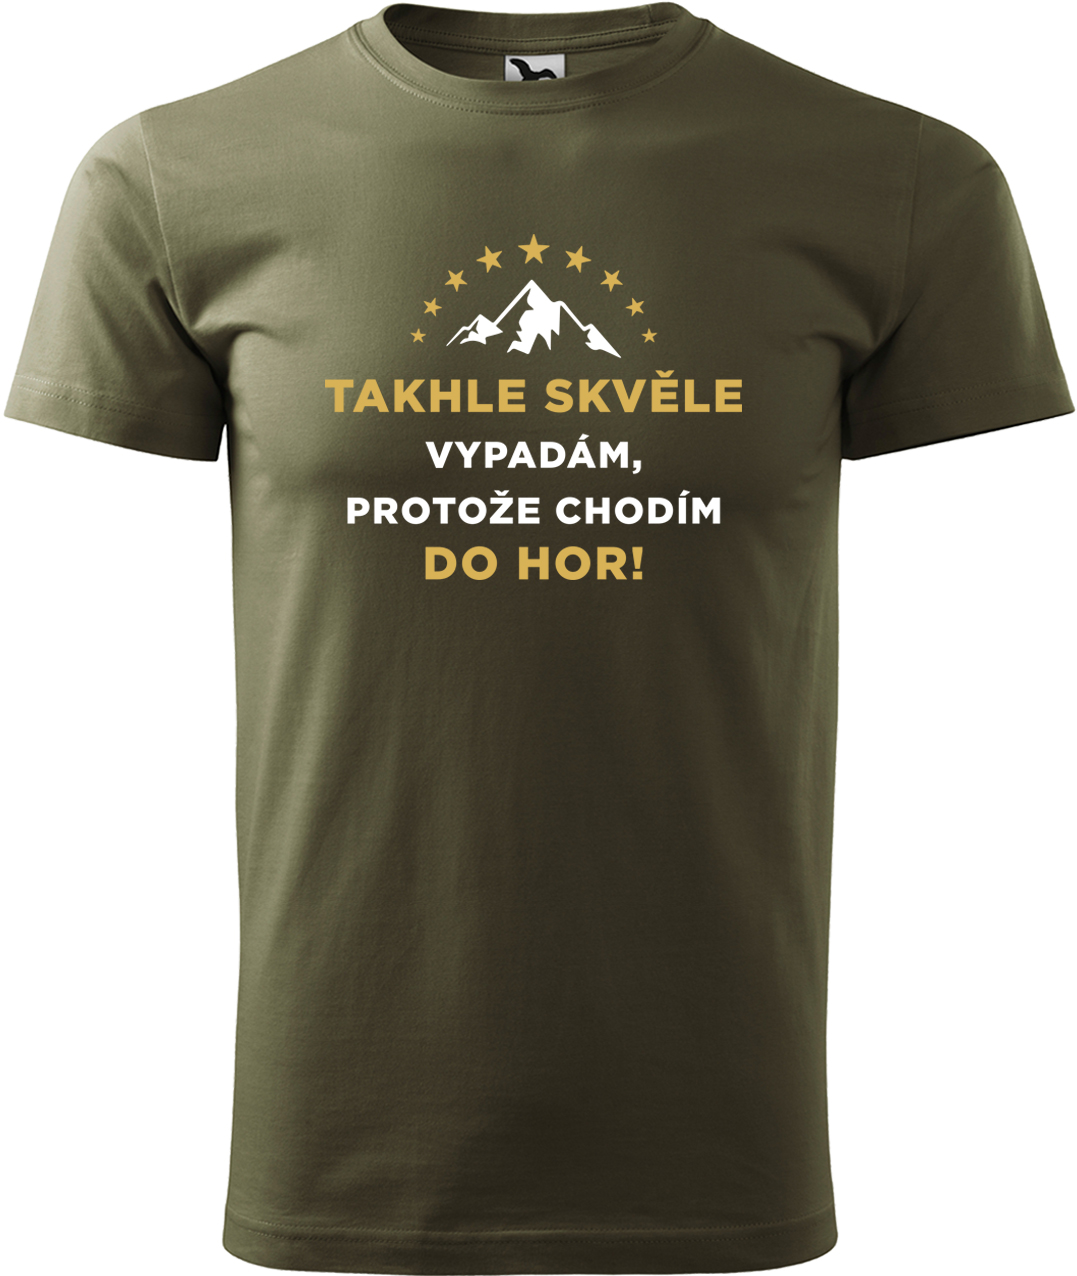 Pánské tričko na hory - Takhle skvěle vypadám, protože chodím do hor Velikost: 4XL, Barva: Military (69), Střih: pánský